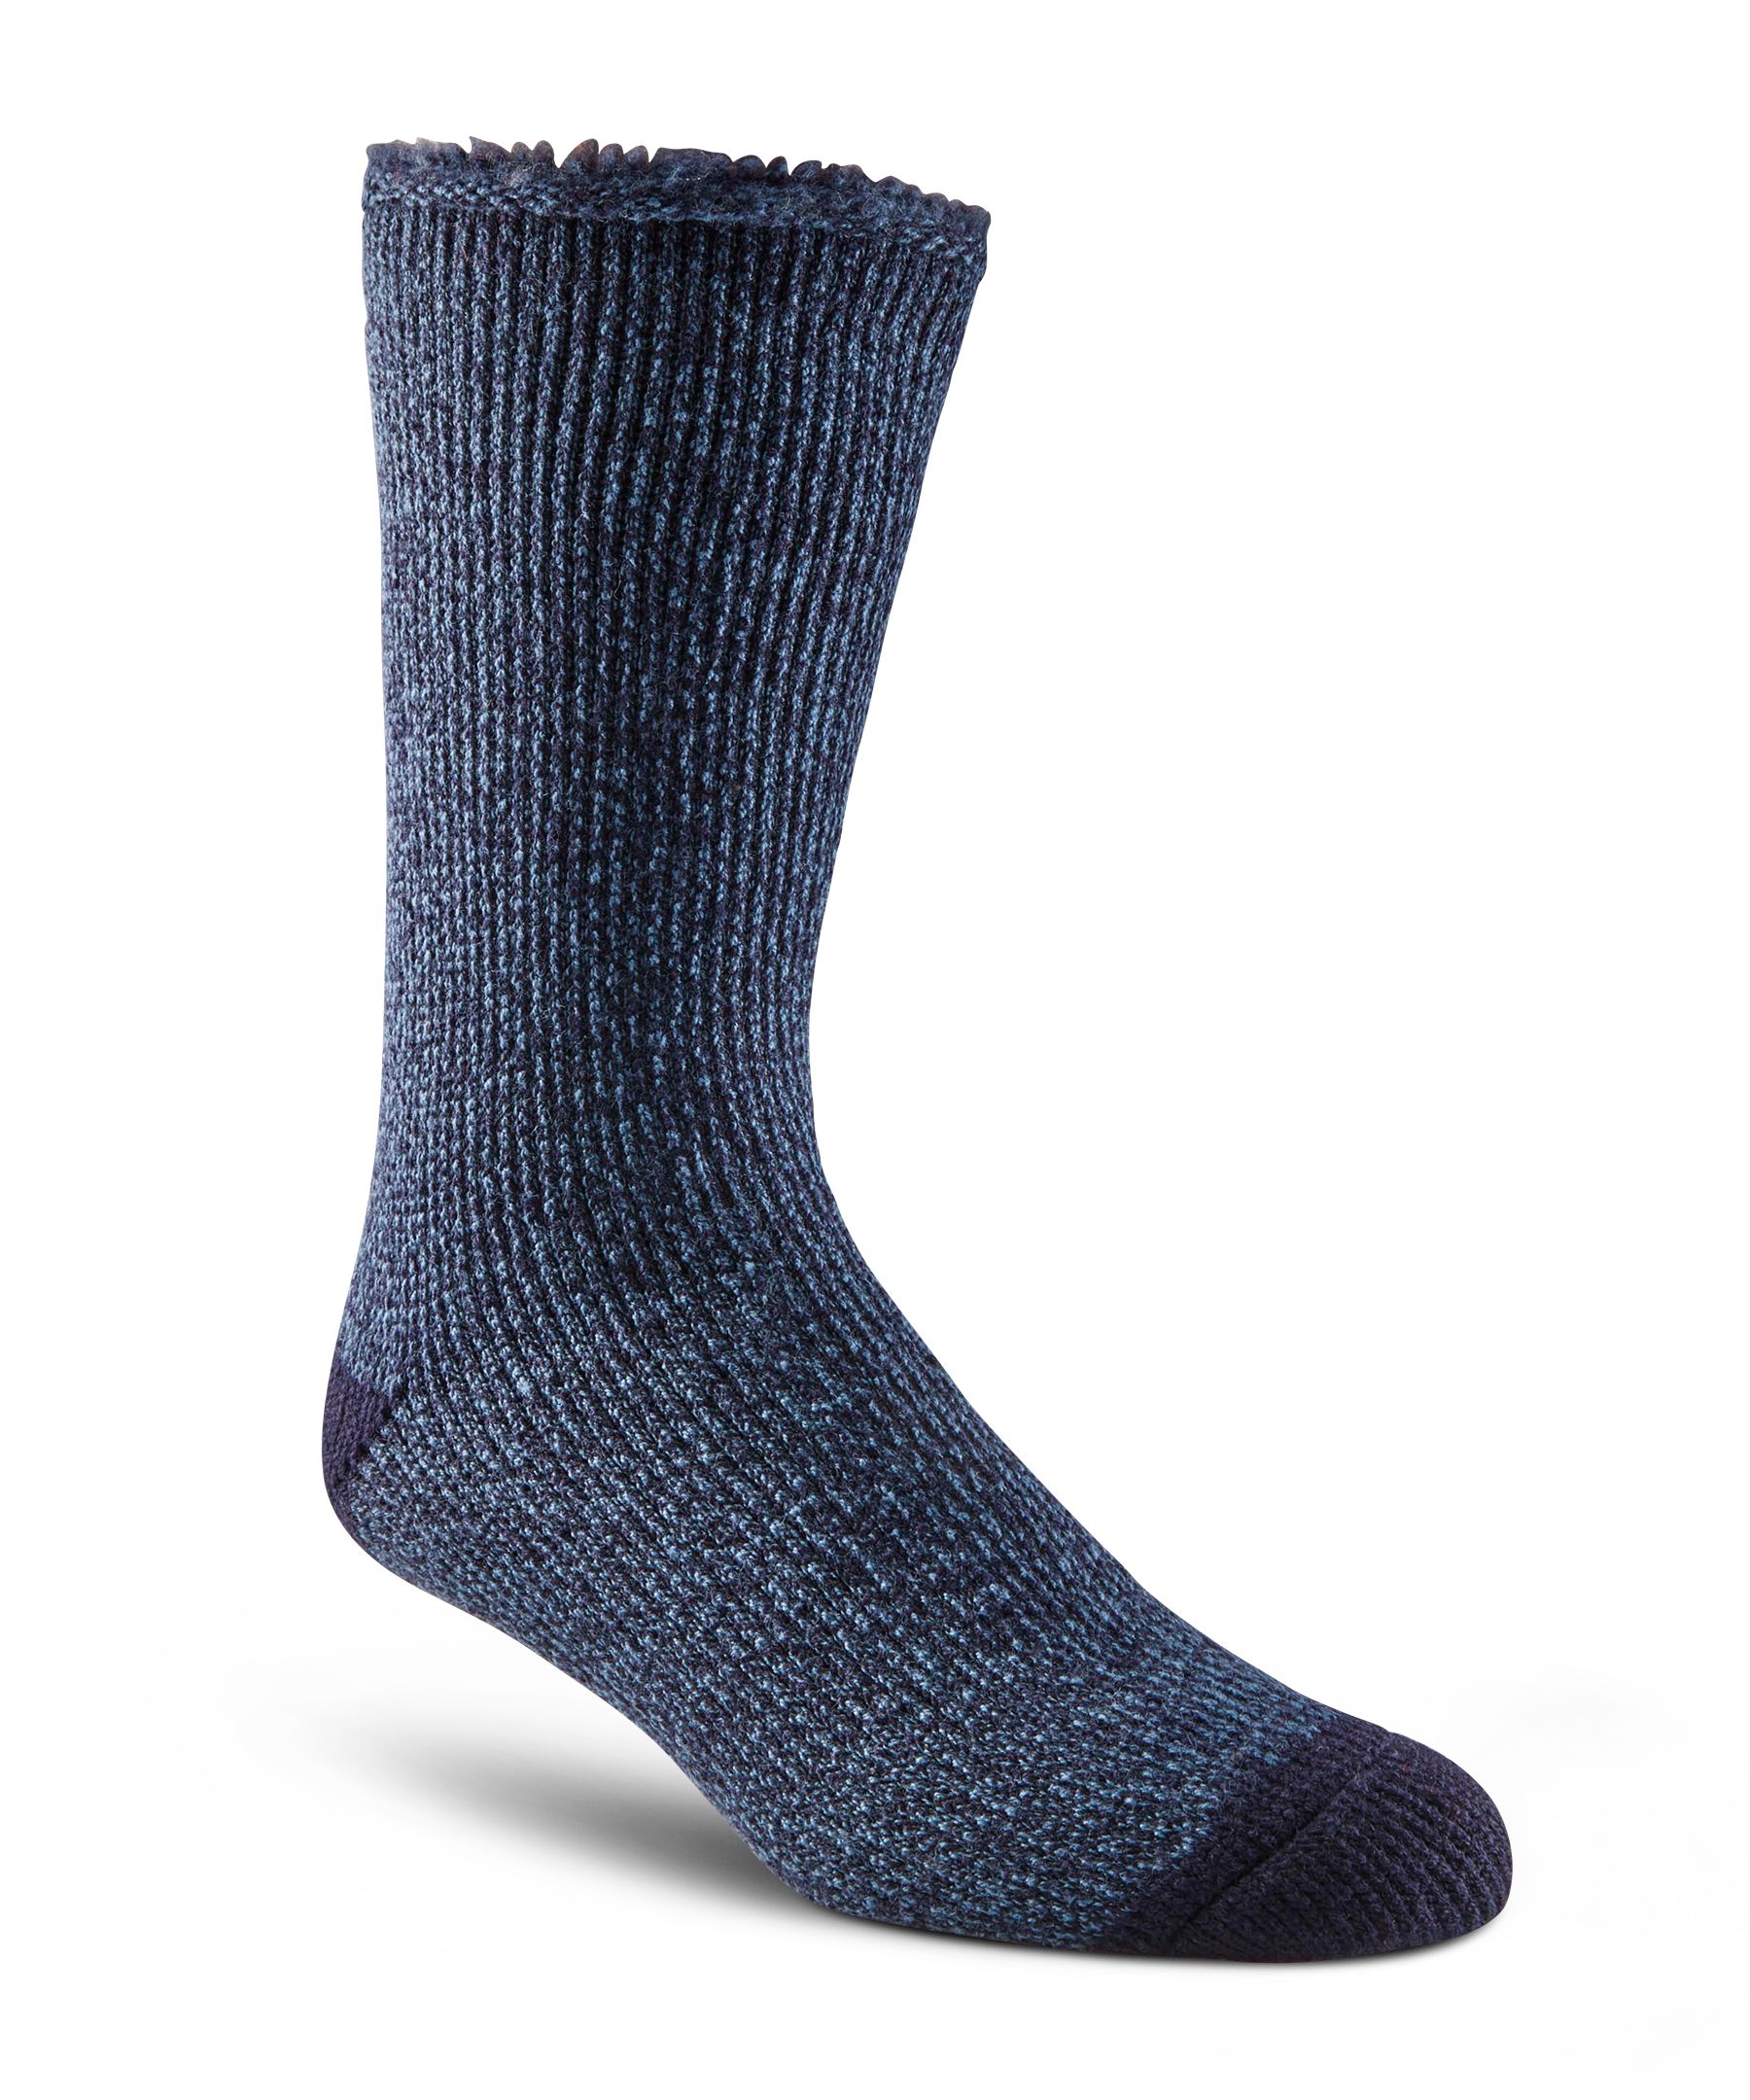 4 types de chaussettes à choisir pour avoir chaud aux pieds – Mets